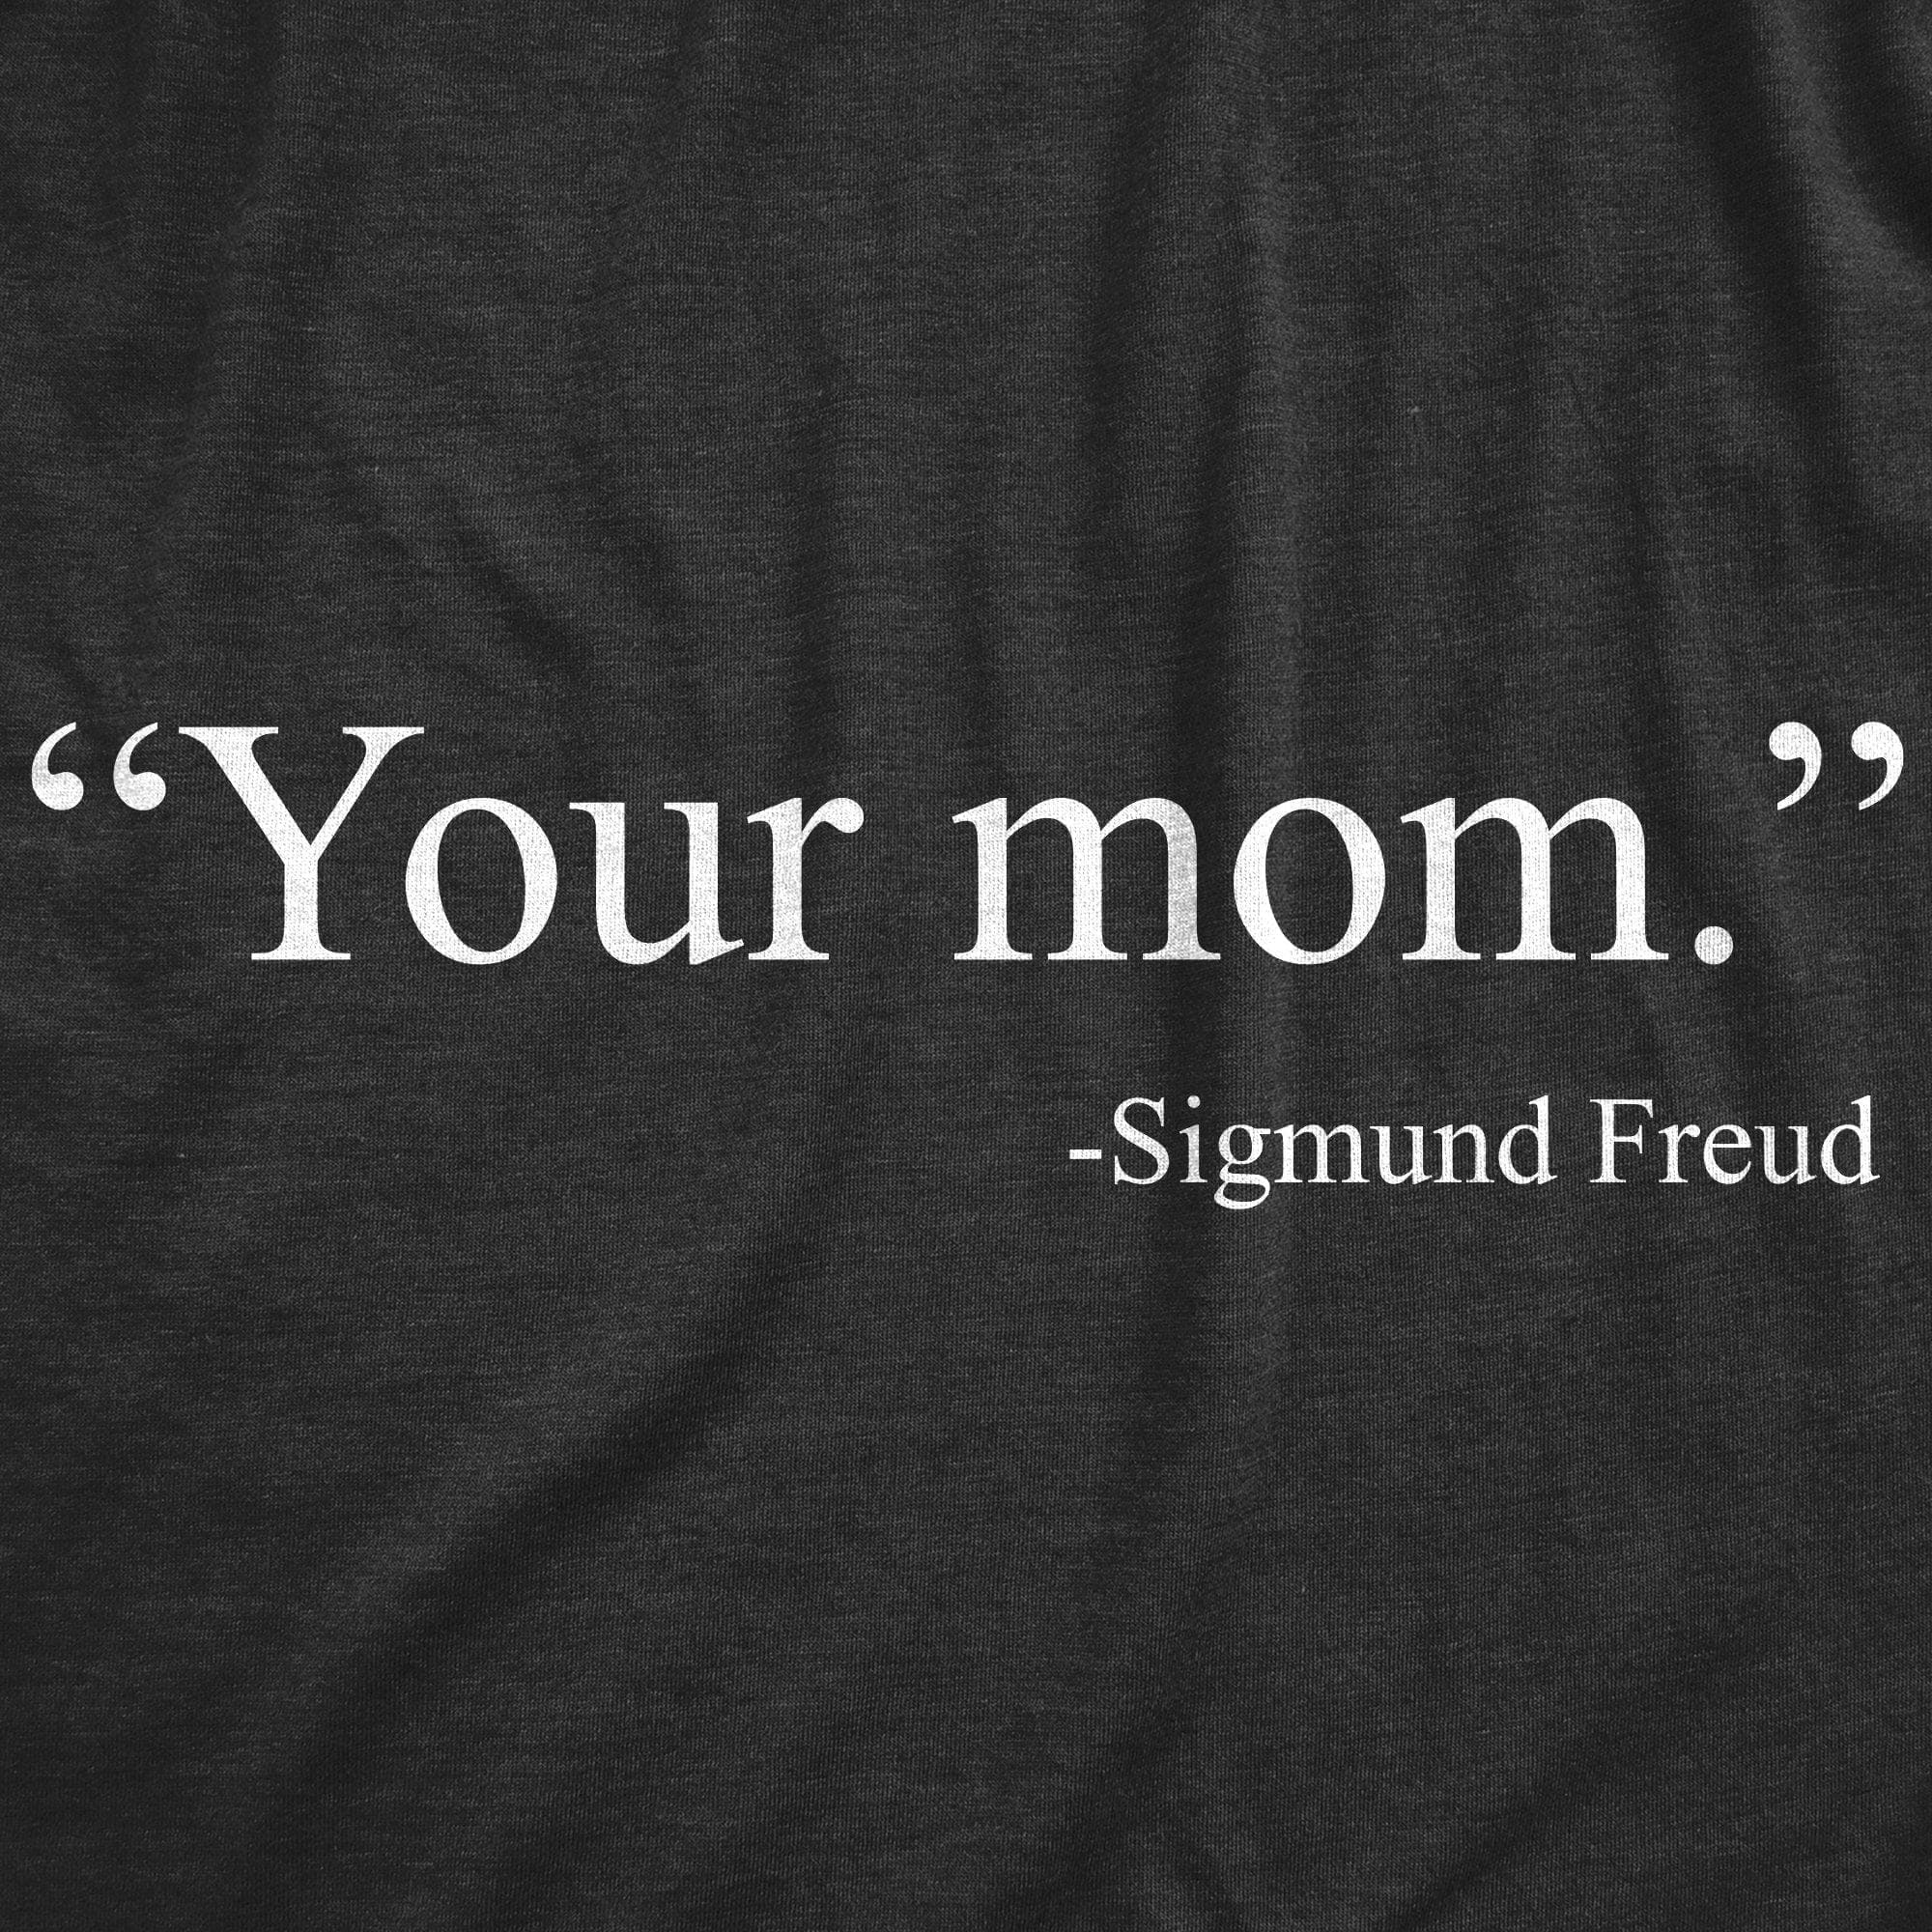 Your Mom -Sigmund Freud Women's Tshirt - Crazy Dog T-Shirts